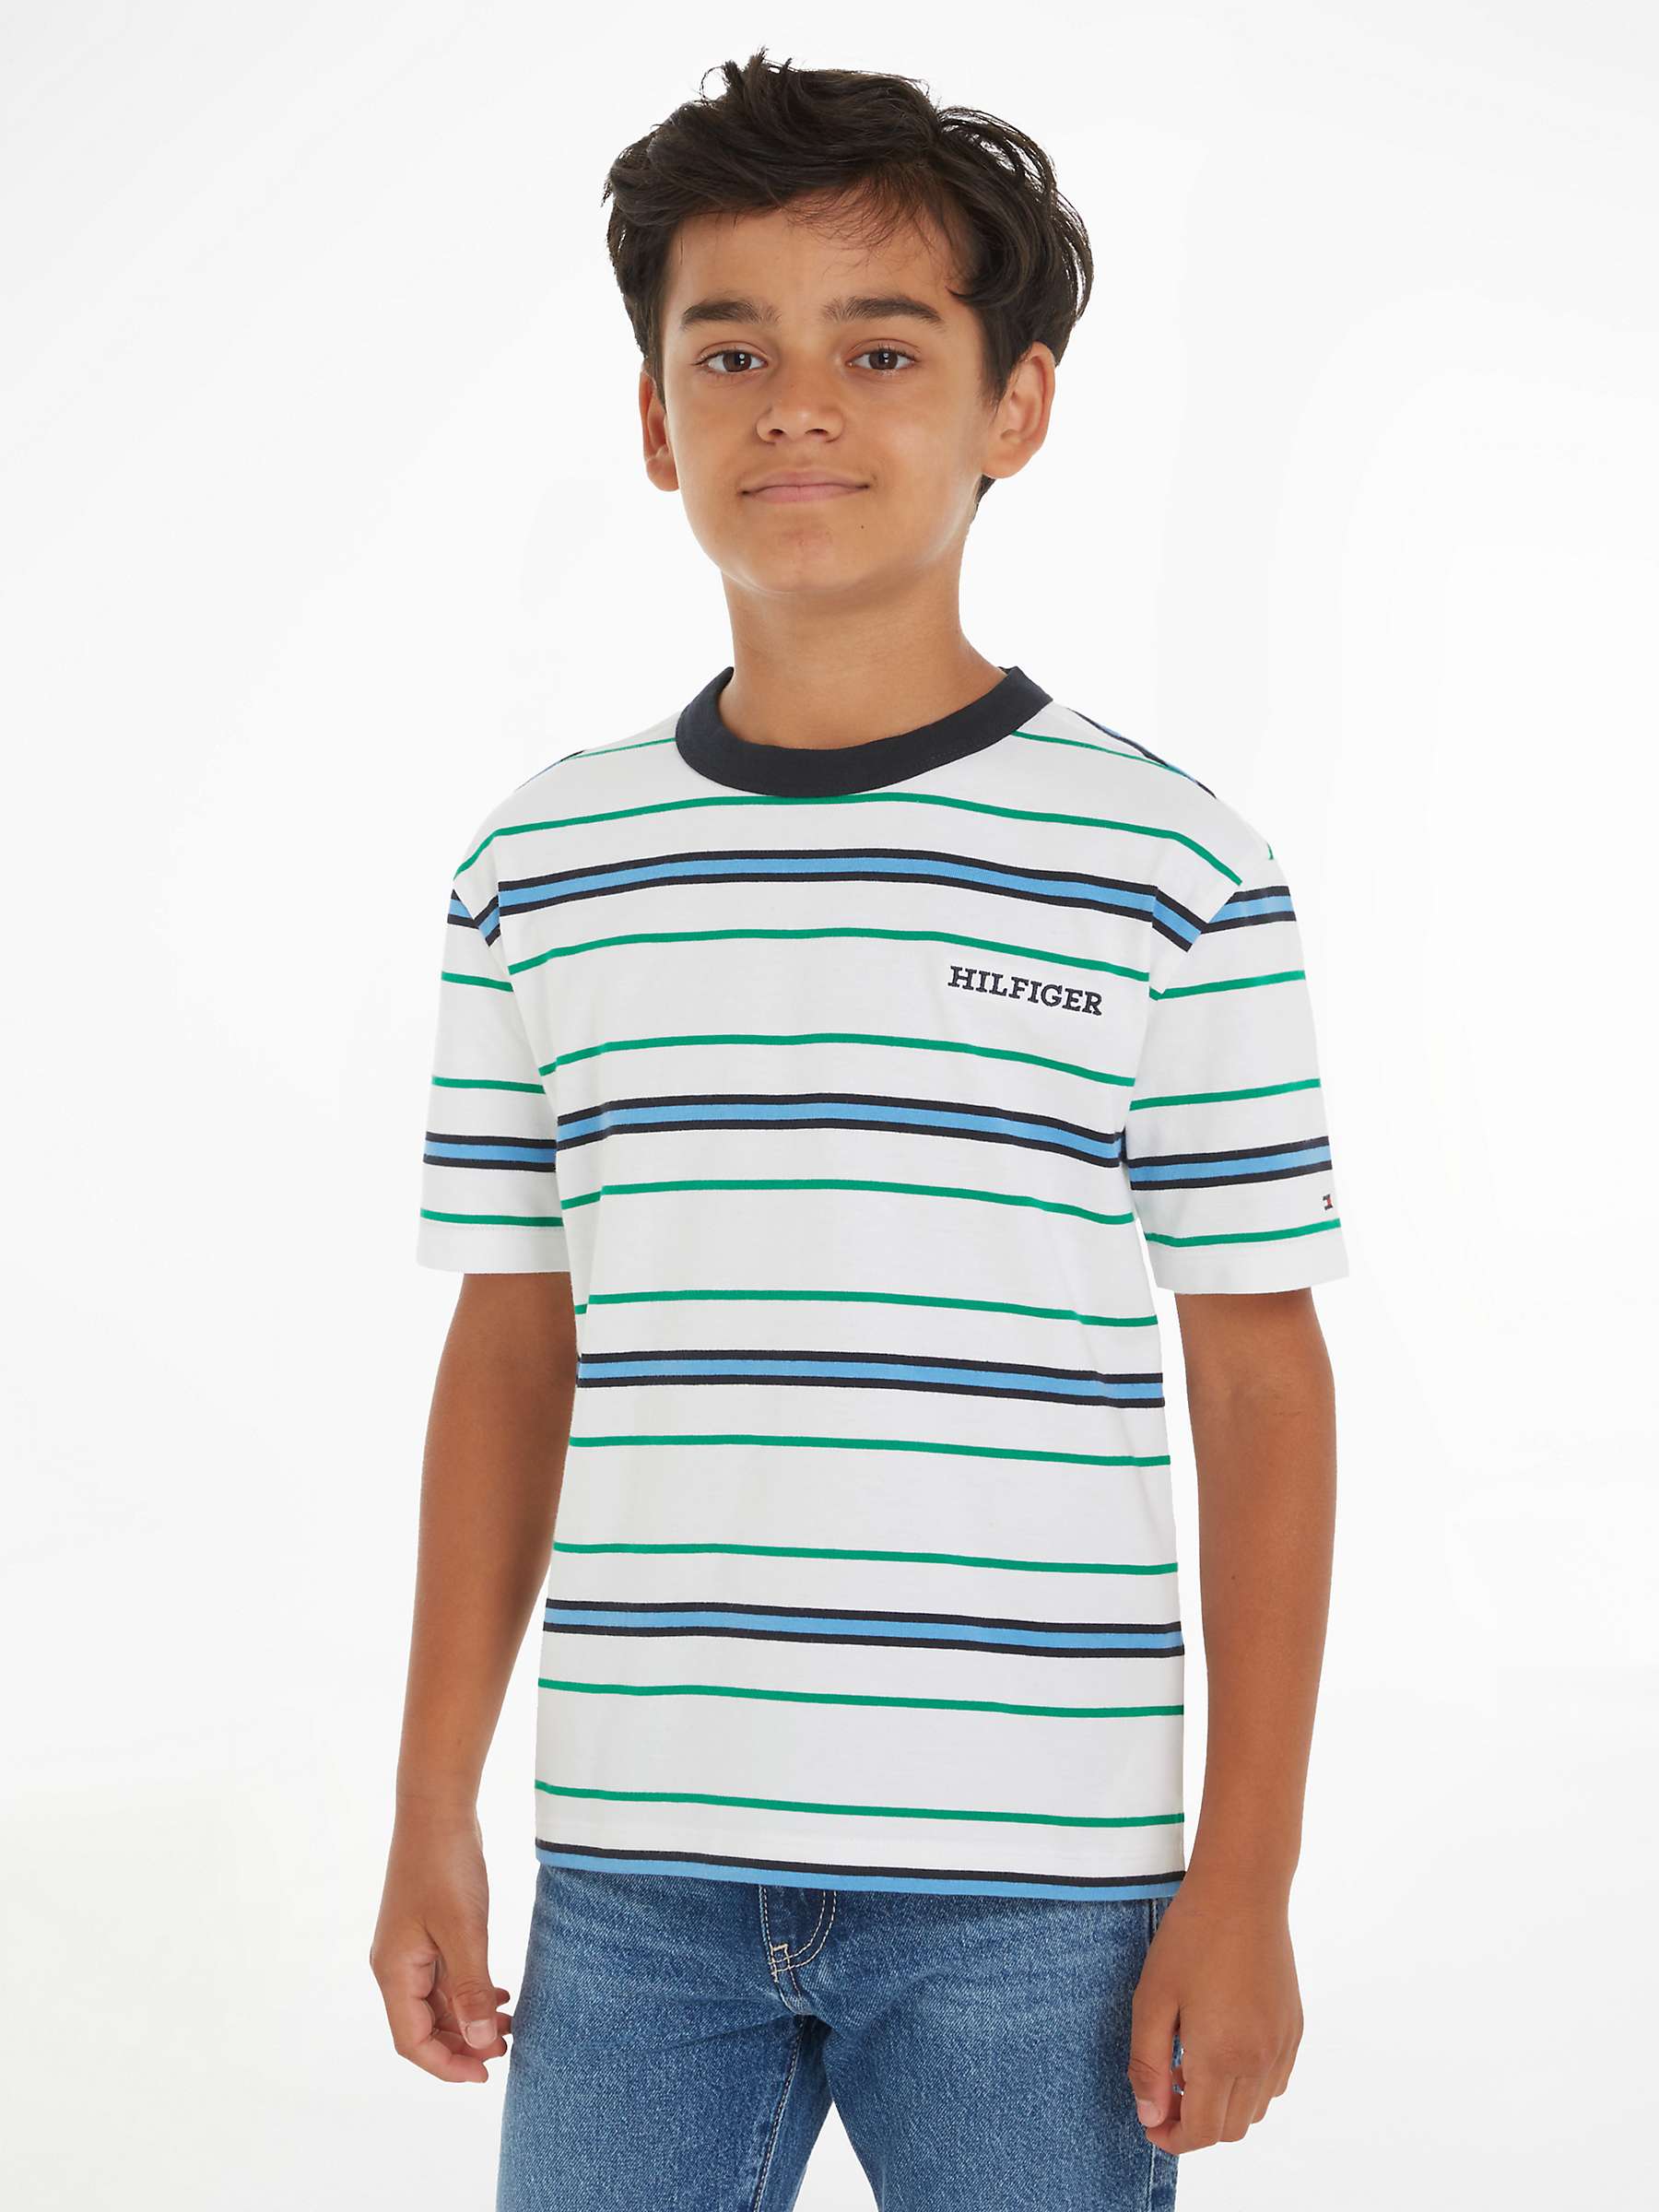 Buy Tommy Hilfiger Kids' Short Sleeve T-Shirt, White Base Online at johnlewis.com